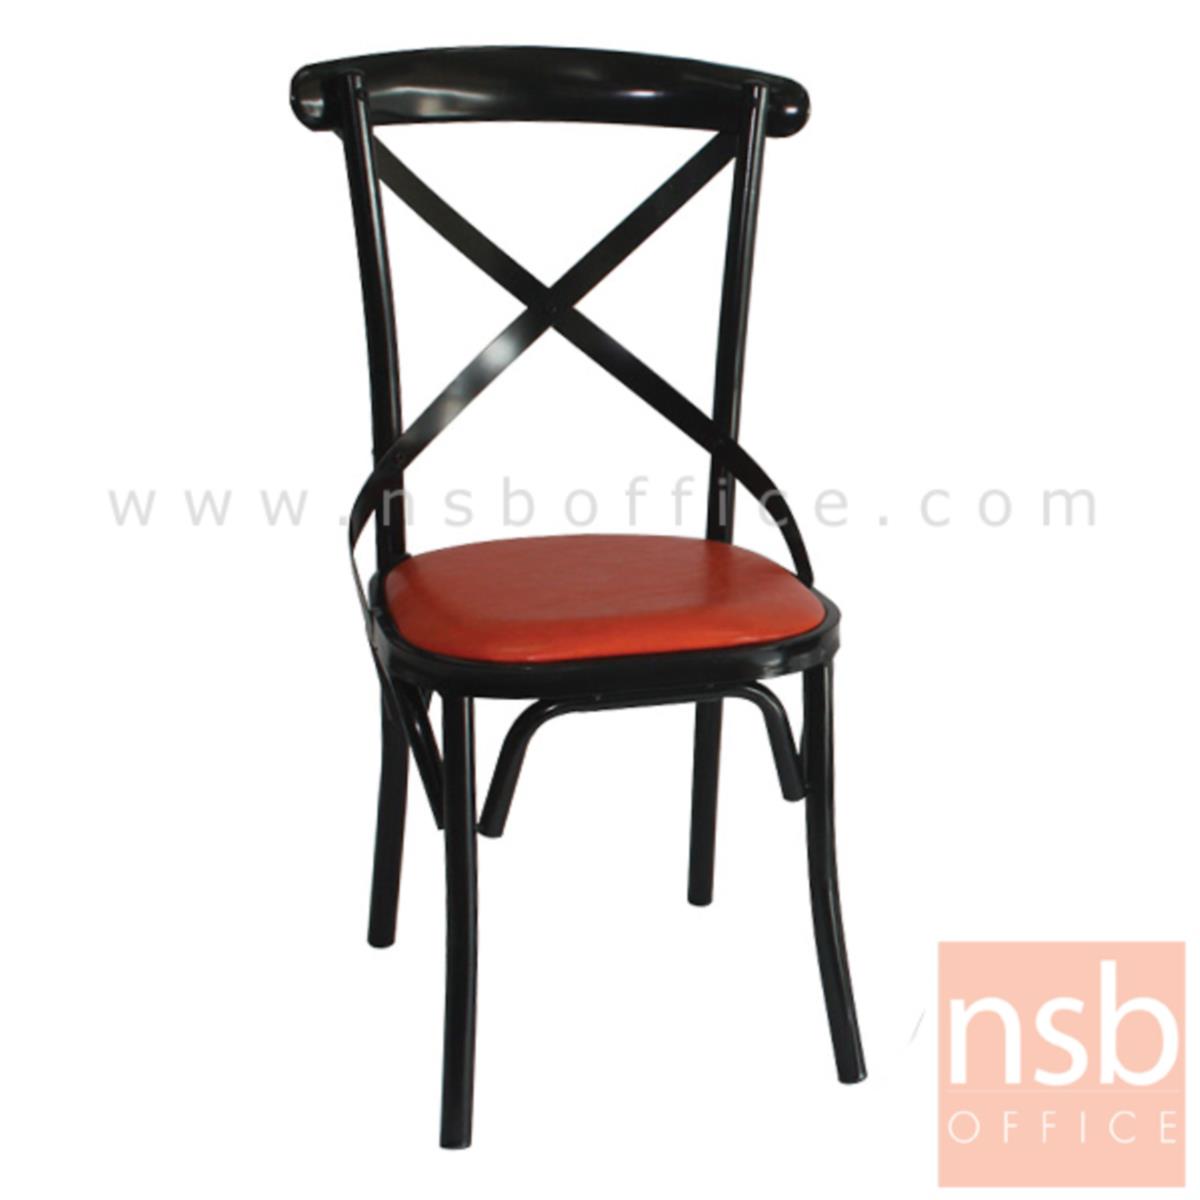 B08A074:เก้าอี้อเนกประสงค์ รุ่น Belinda (เบลินดา)  โครงสีดำ